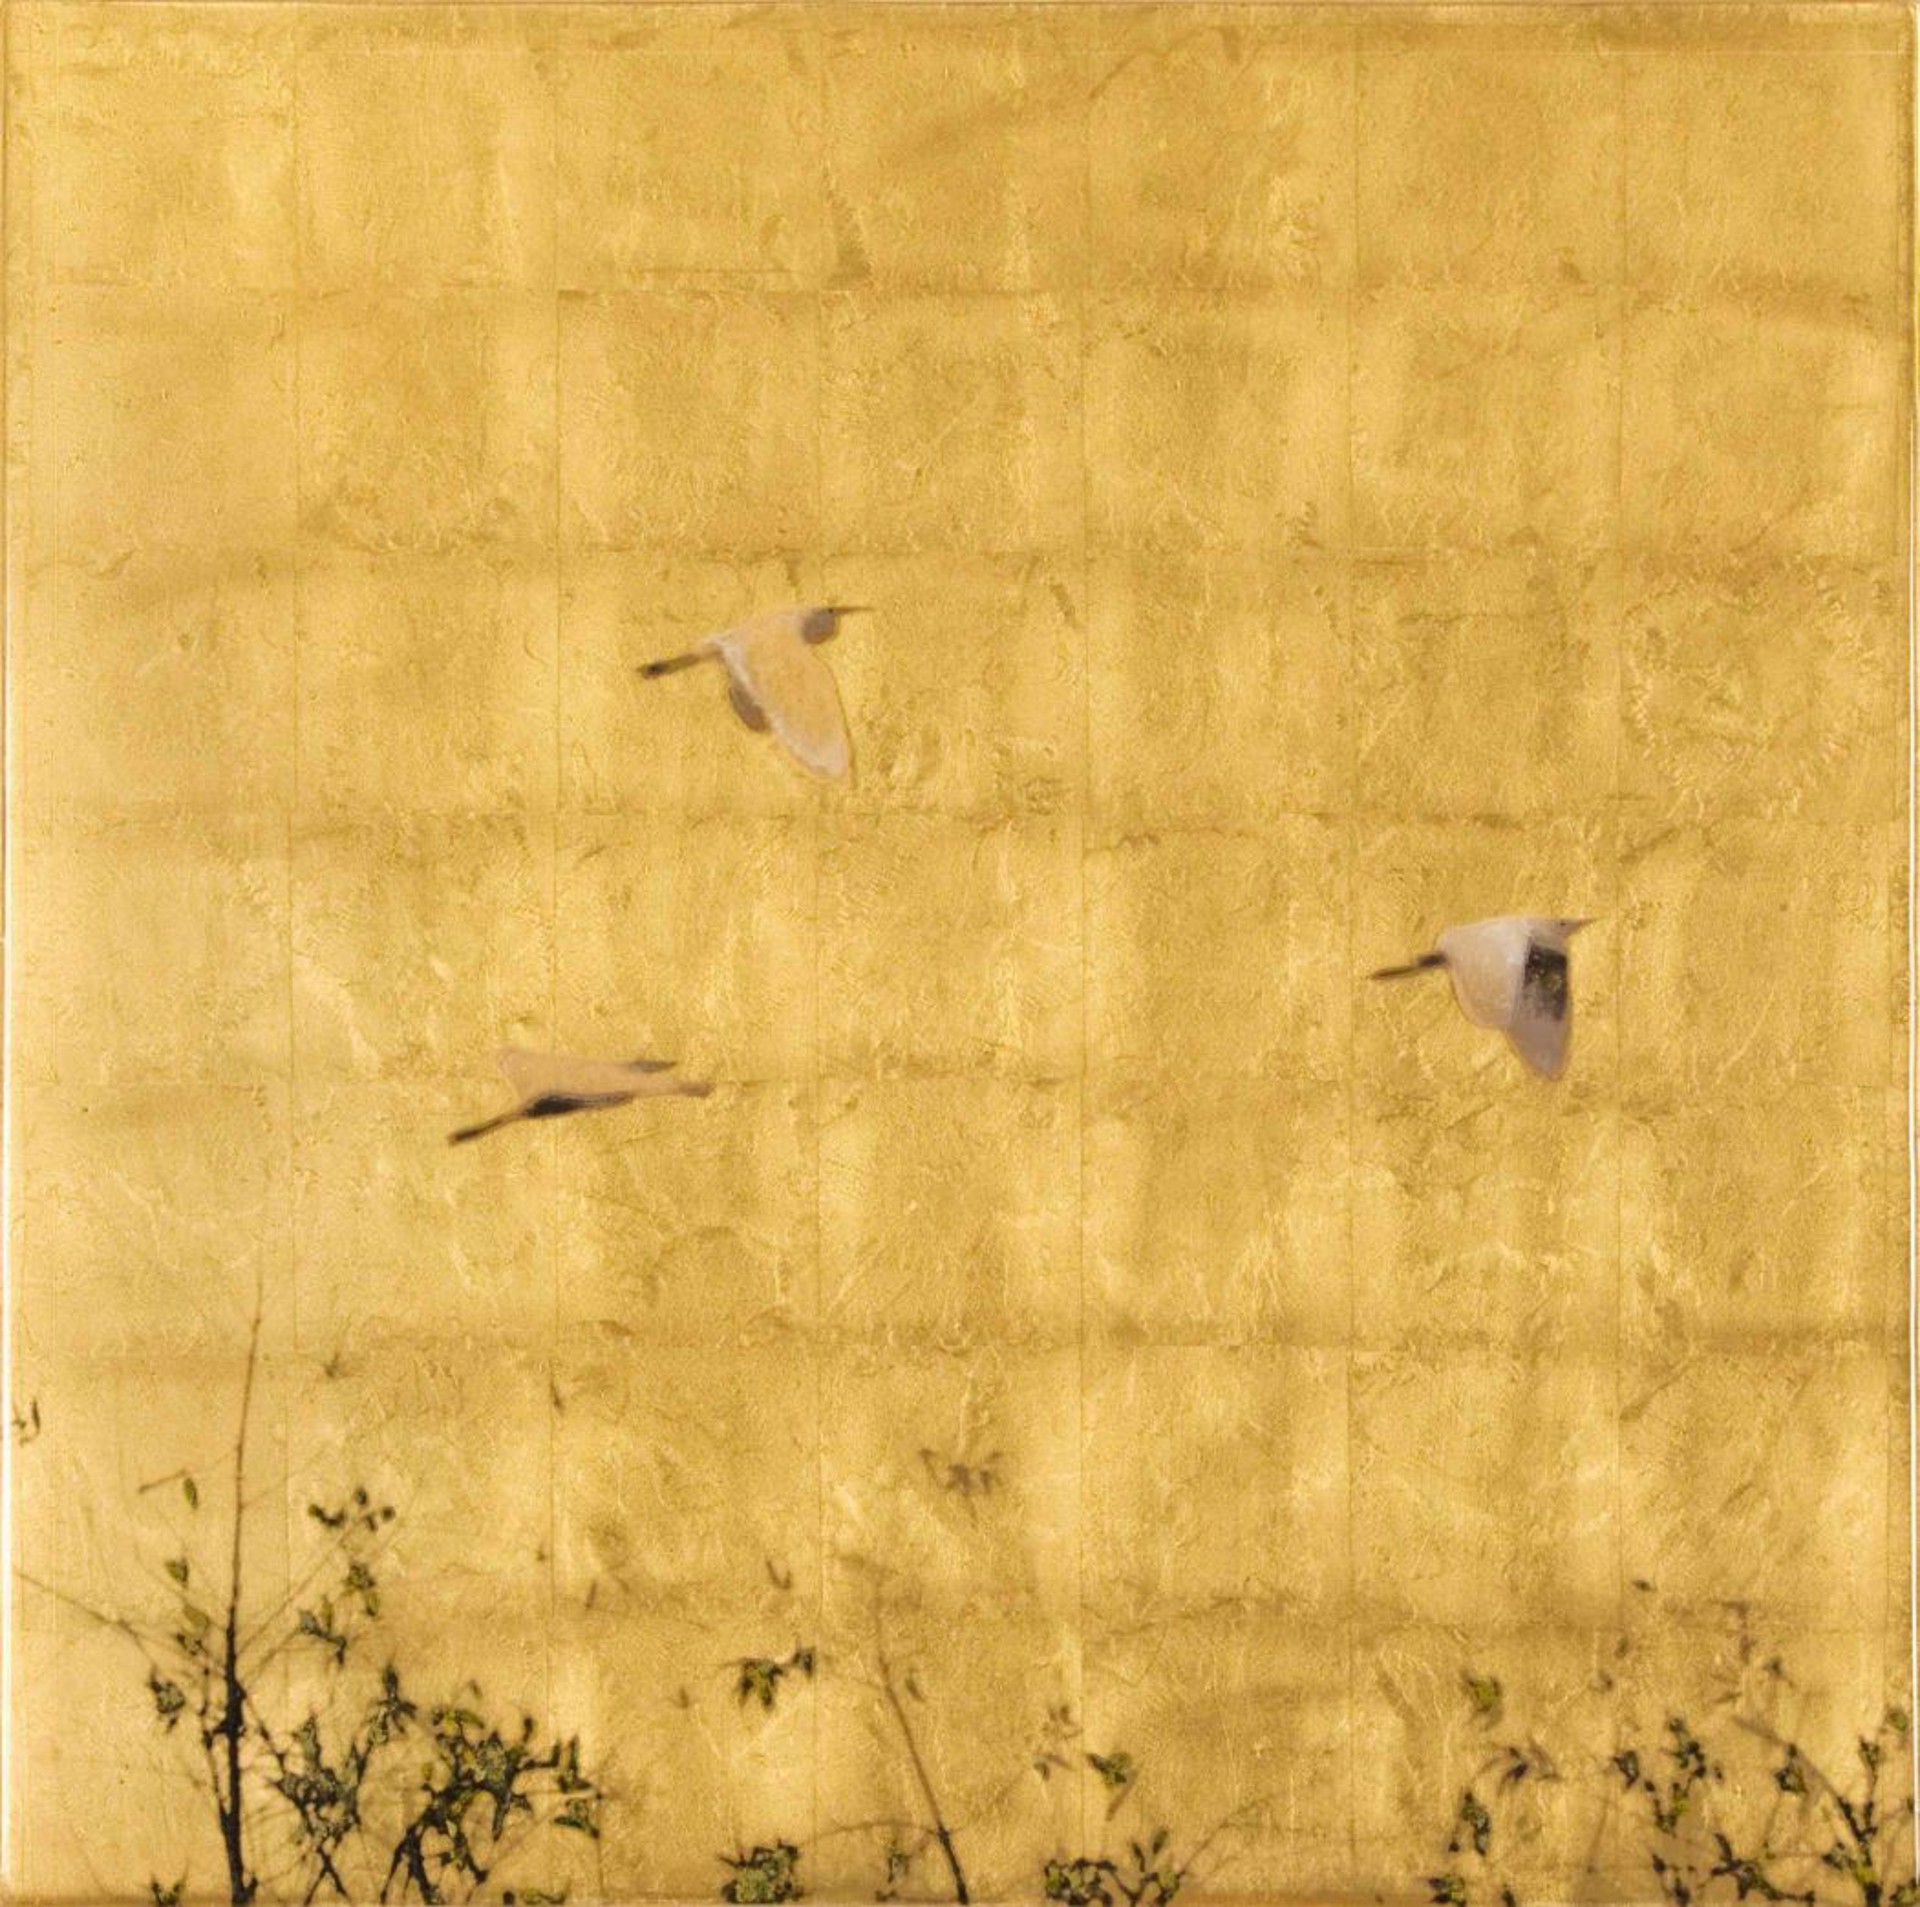 Golden Flight by Susan Goldsmith